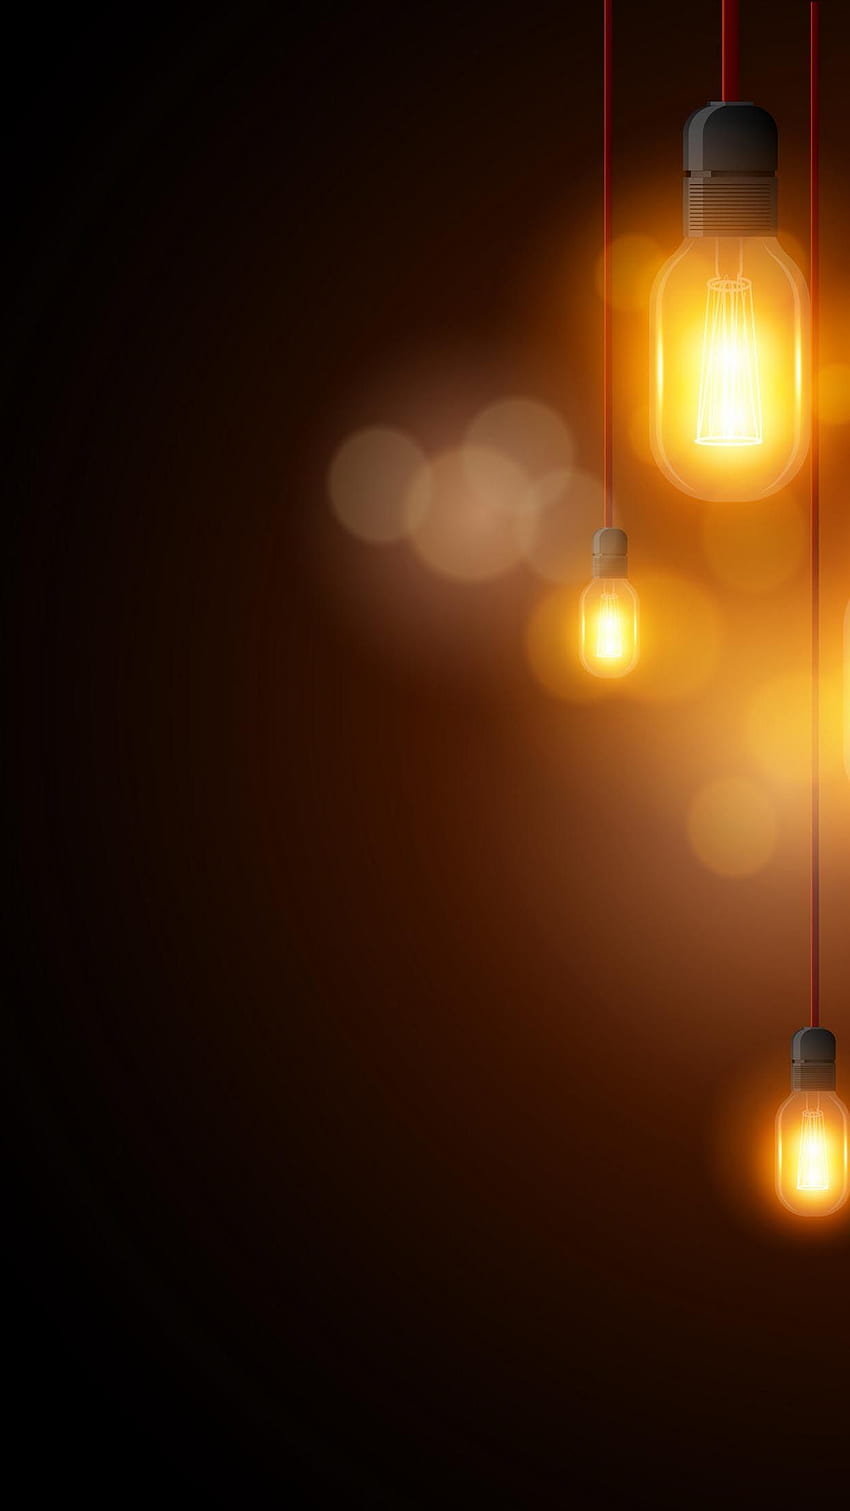 Lampe Glühbirne Elektrische Lampe Lichtquelle Hintergrund im Jahr 2020. Heller Hintergrund, Liebeshintergrund, iPhone-Hintergrund HD-Handy-Hintergrundbild